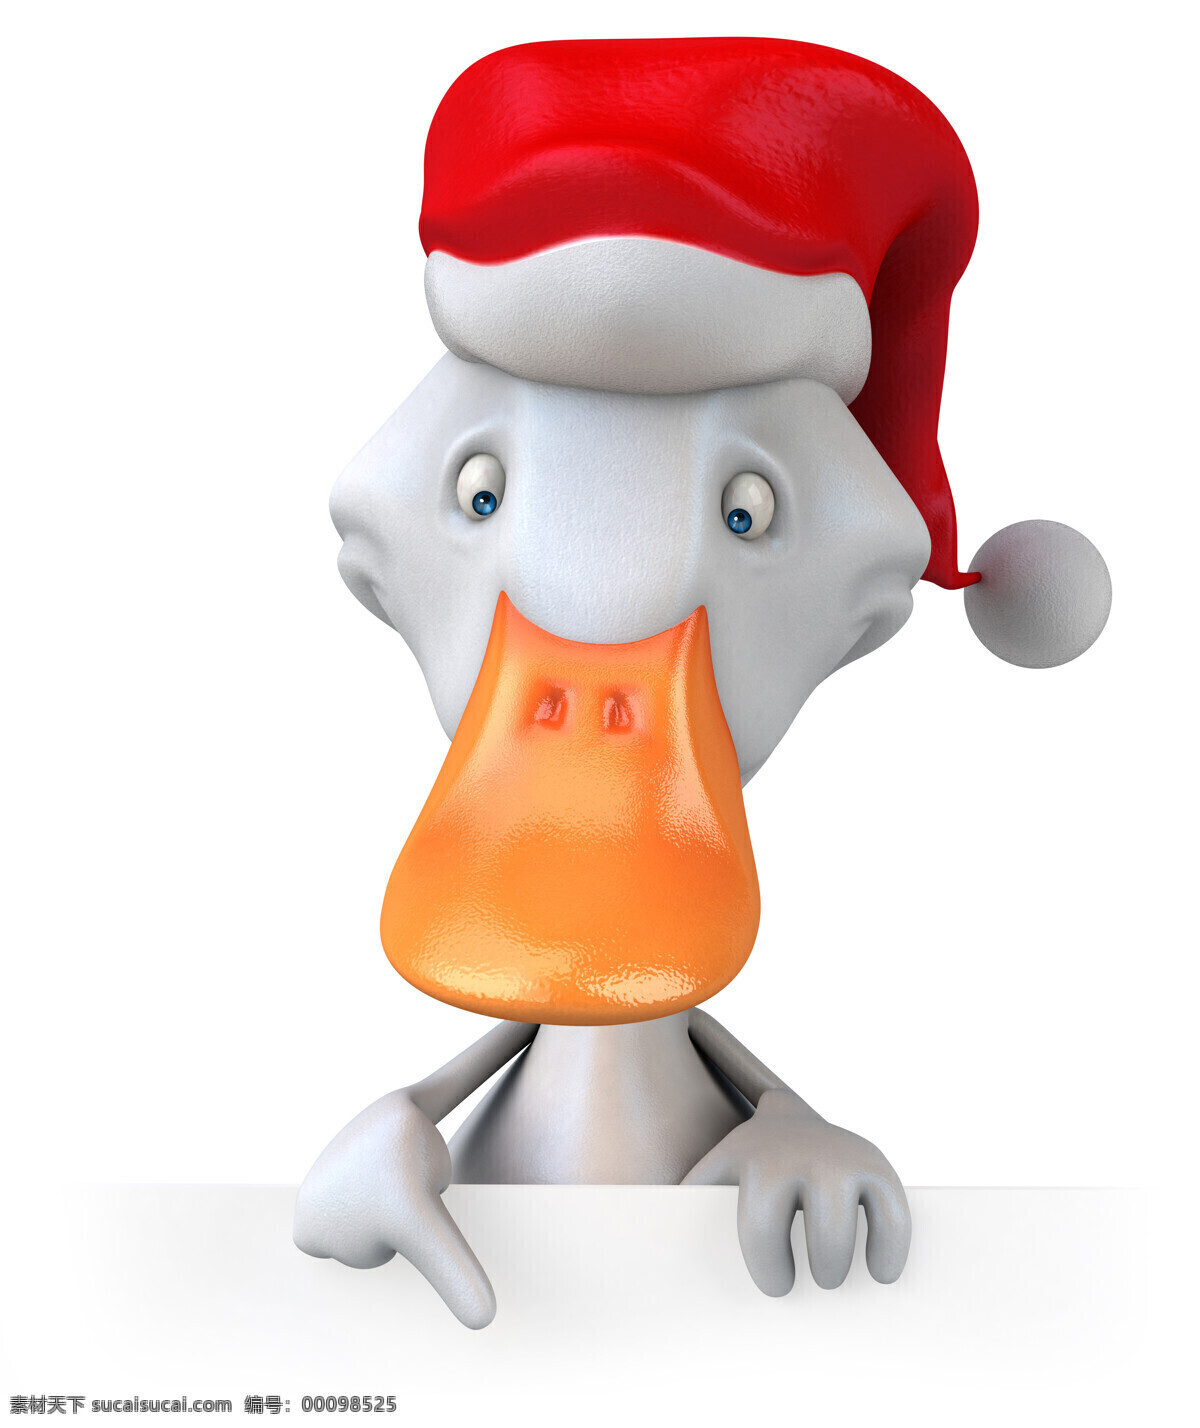 3d 动物图片 3d设计 卡通动物 圣诞节 圣诞帽 鸭子 3d动物 3d模型素材 其他3d模型